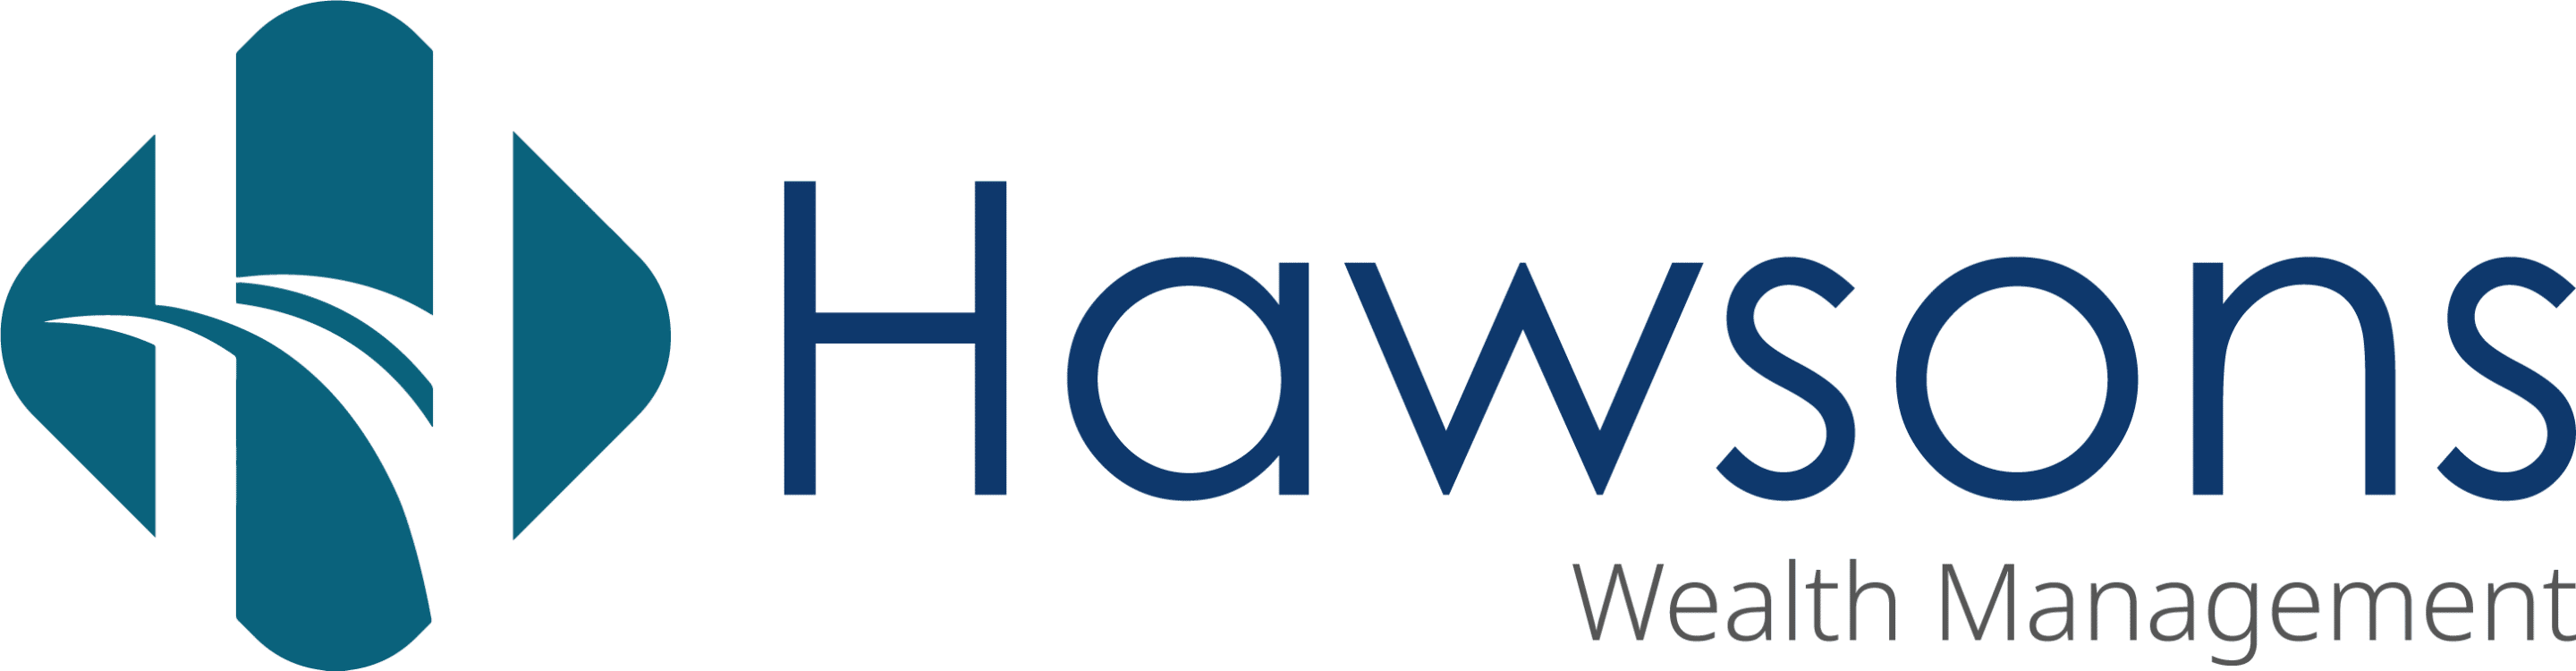 Hawsons wealth management